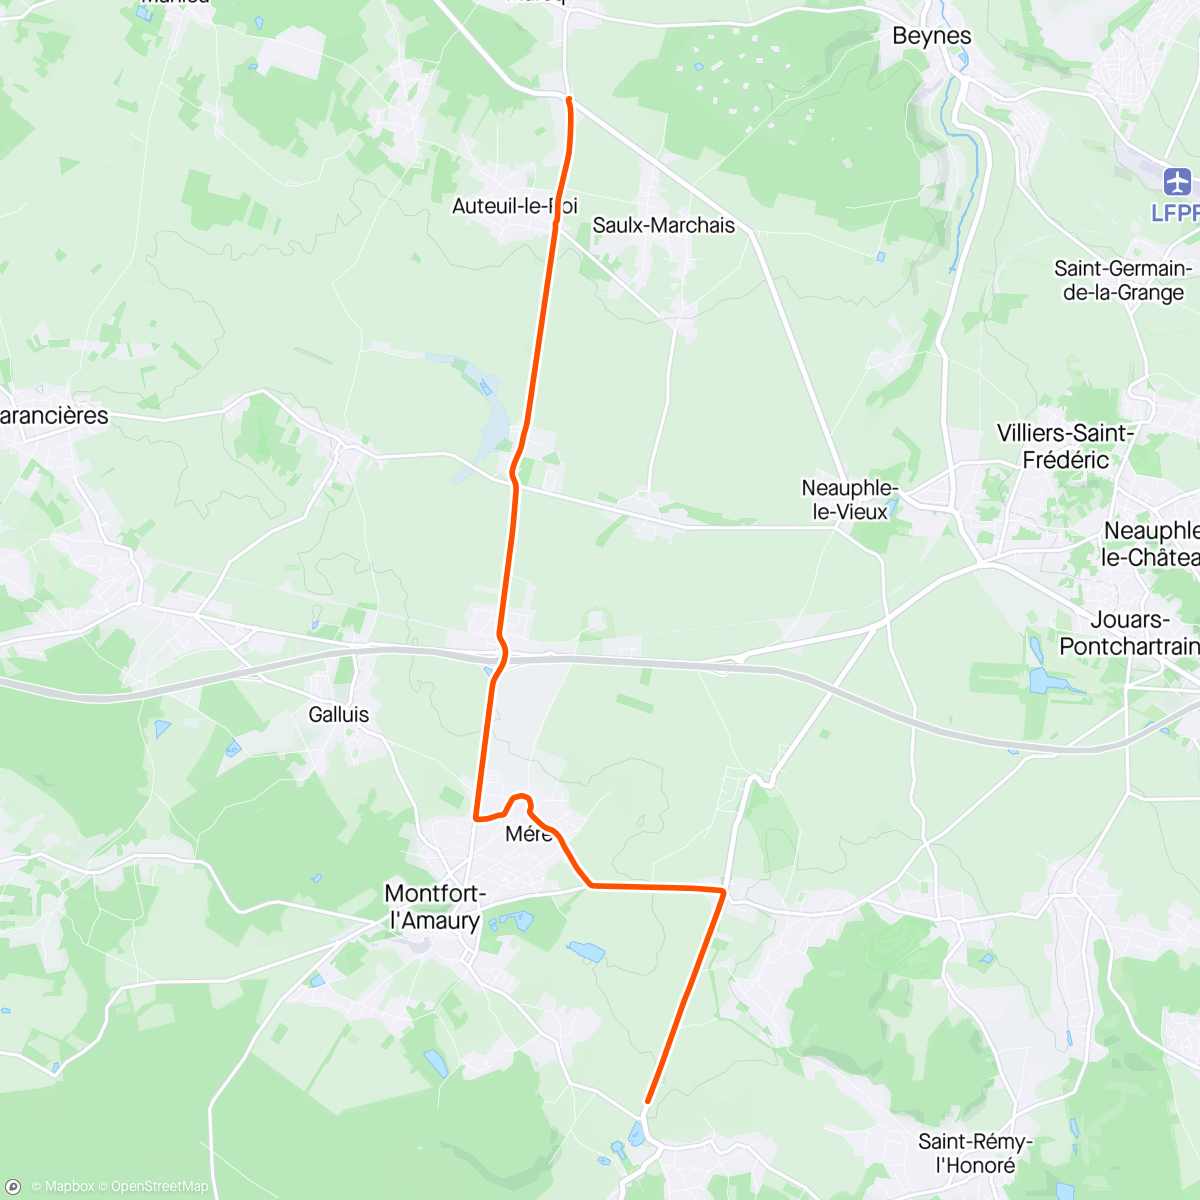 Mapa de la actividad (Kinomap - orbitrek - 36 min)